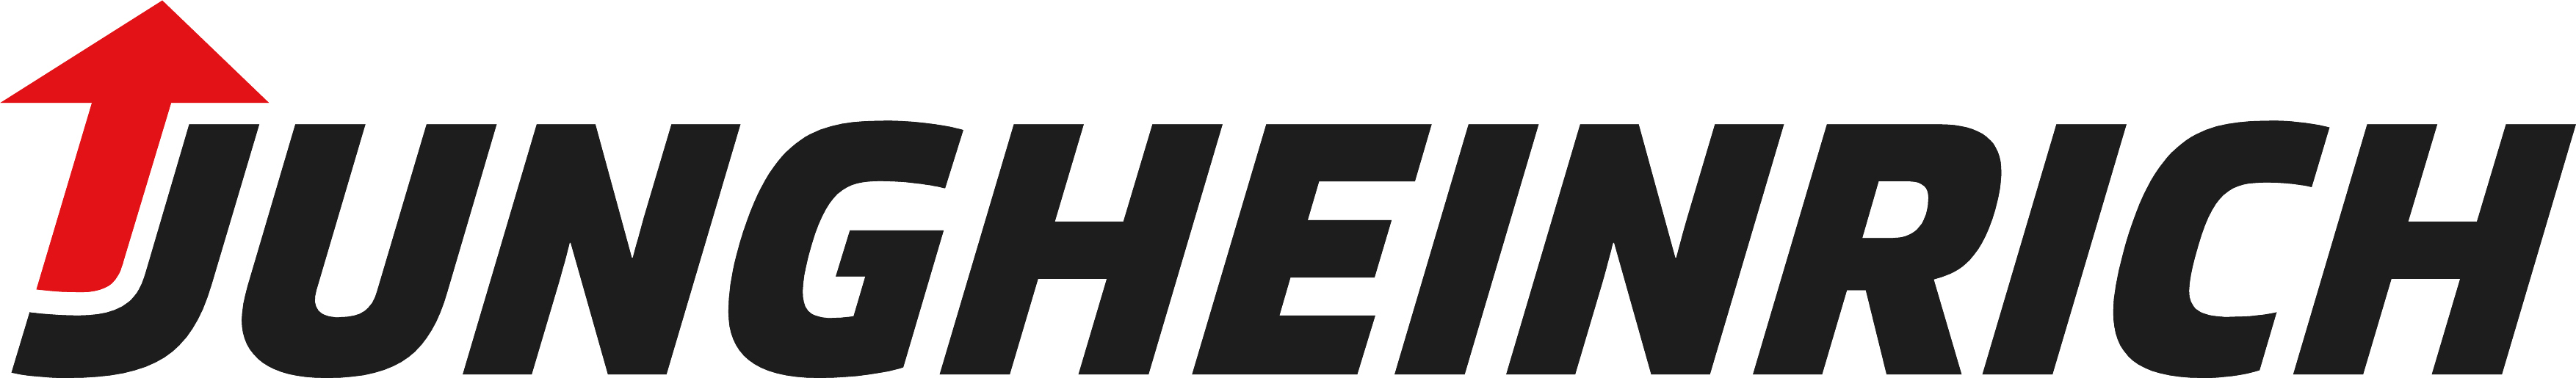 Jungheinrich_logo_2018